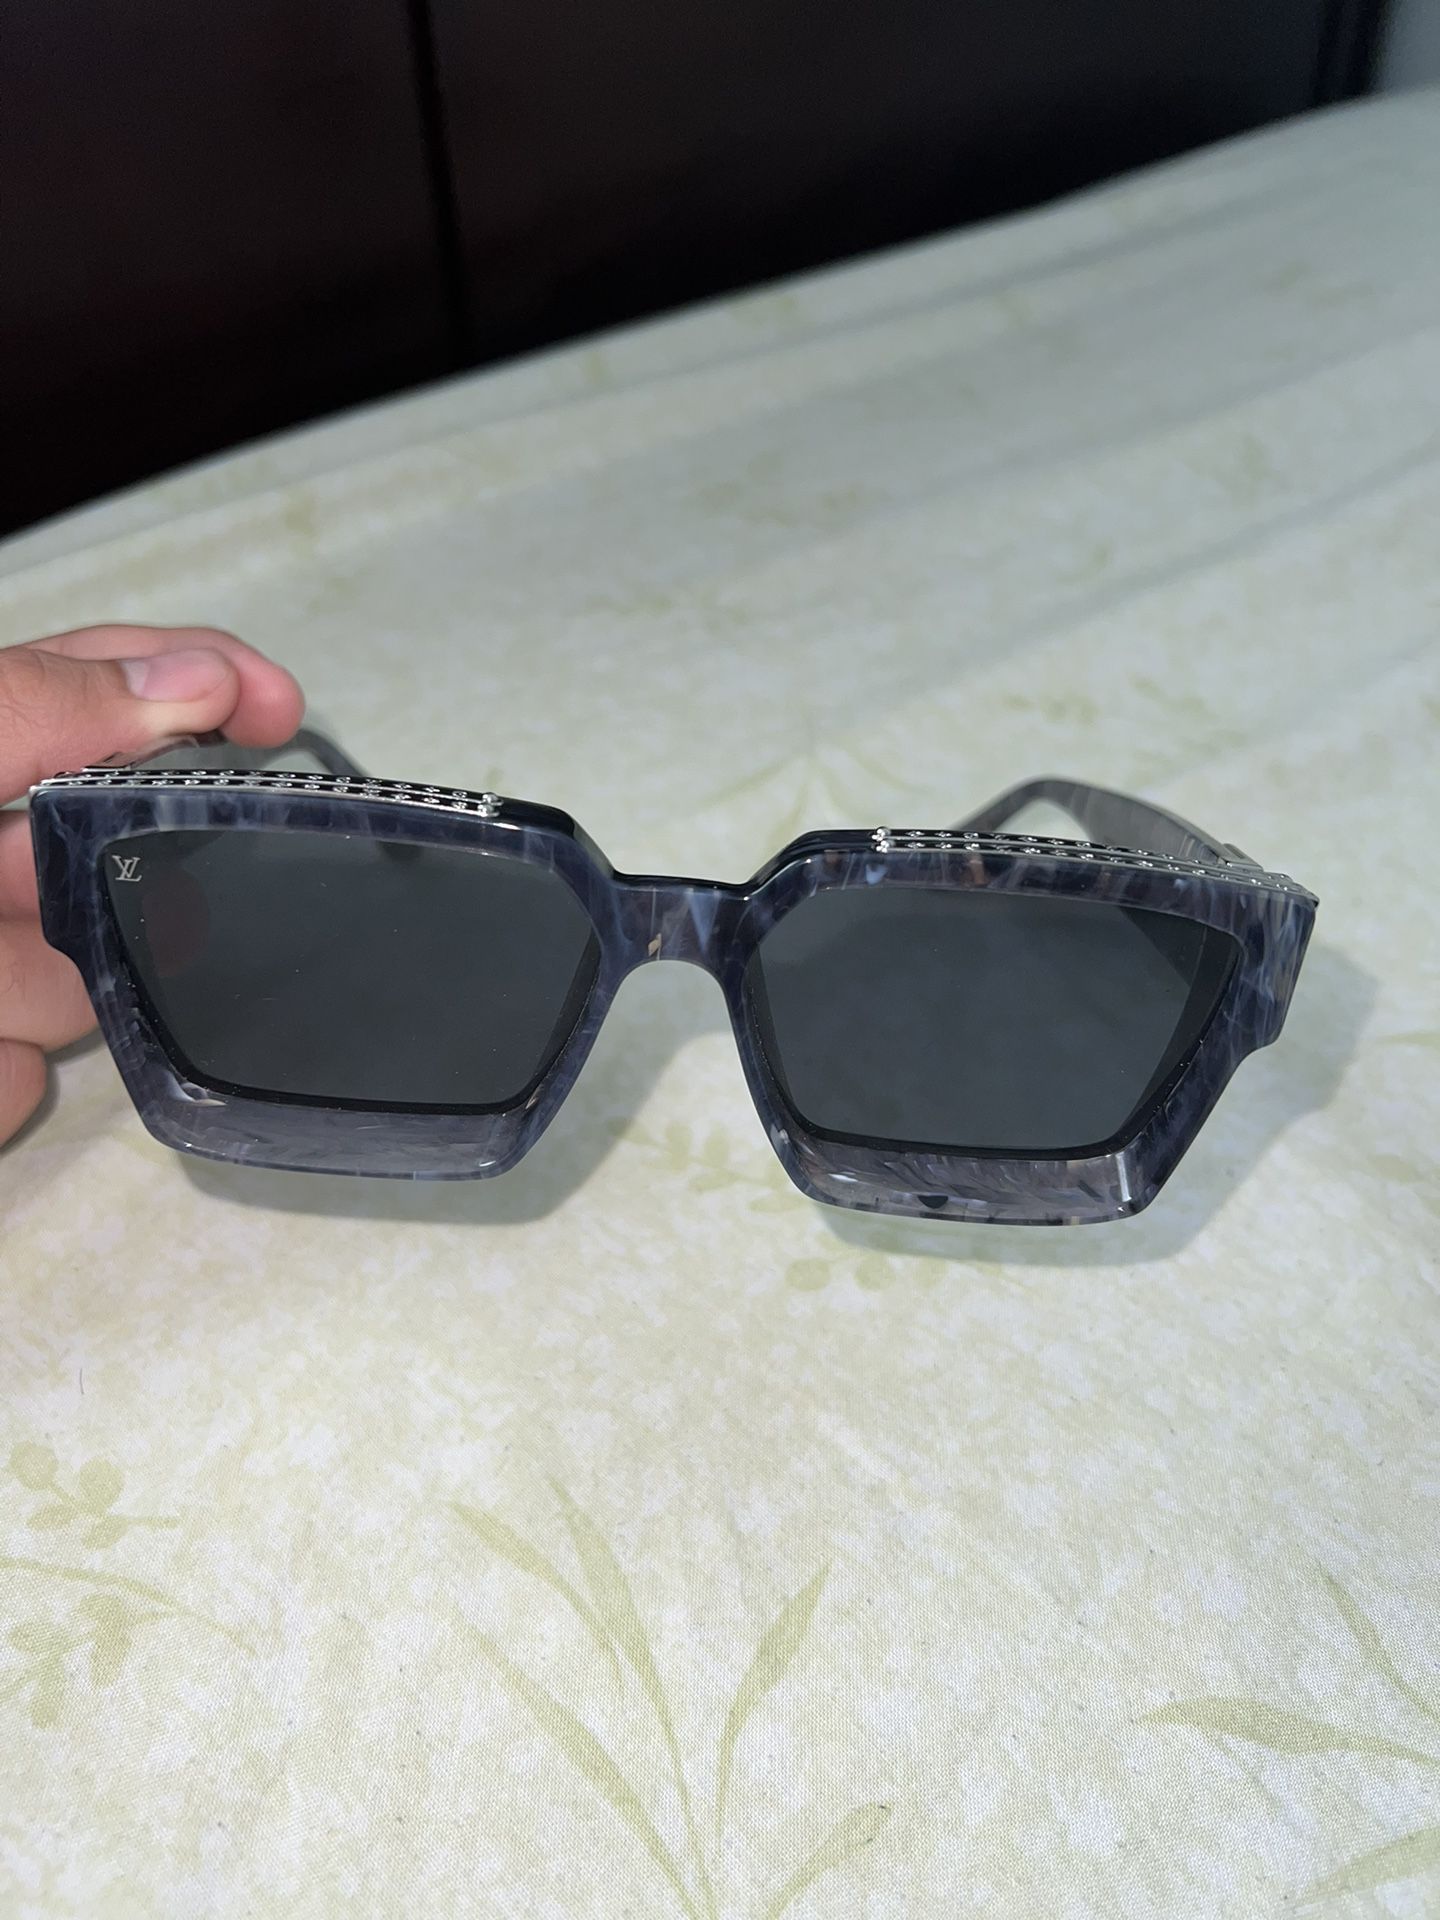 Louis vuitton 1.1 millionaires sunglasses for Sale in Manassas, VA